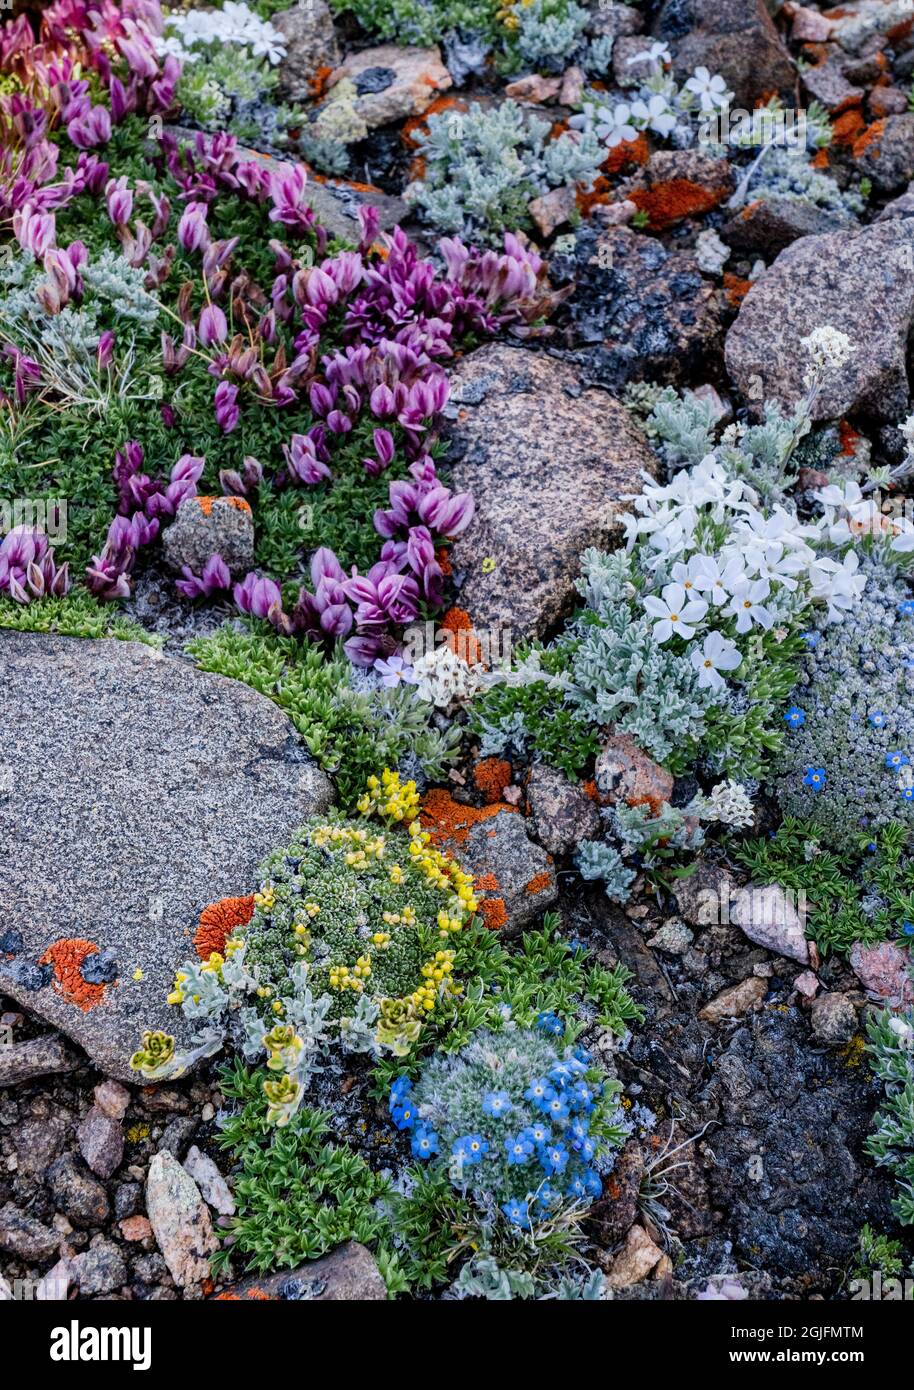 USA, Wyoming. Colorful alpine wildflowers among rocks, Beartooth Pass. Stock Photo